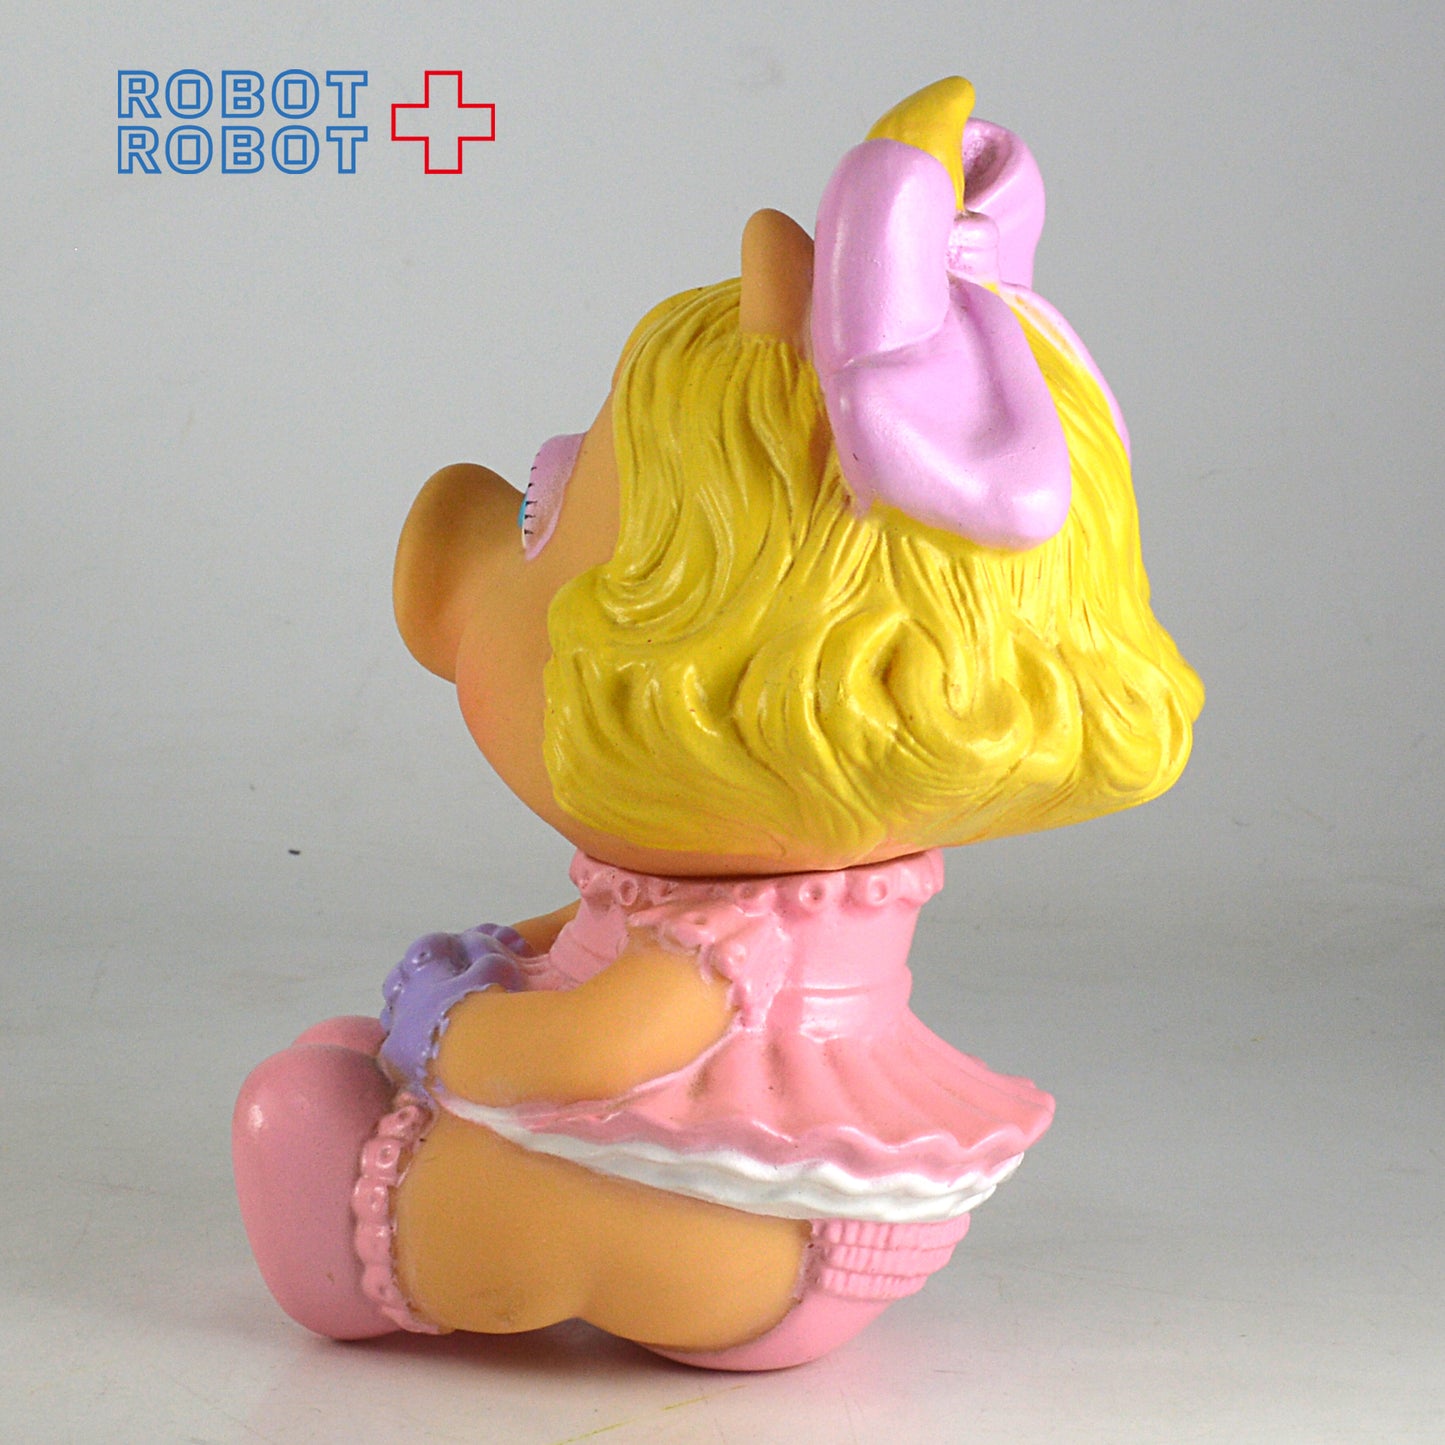 ベビー・ミス・ピギー ピンクのリボン ソフビ人形  1984ハズブロ セサミストリート